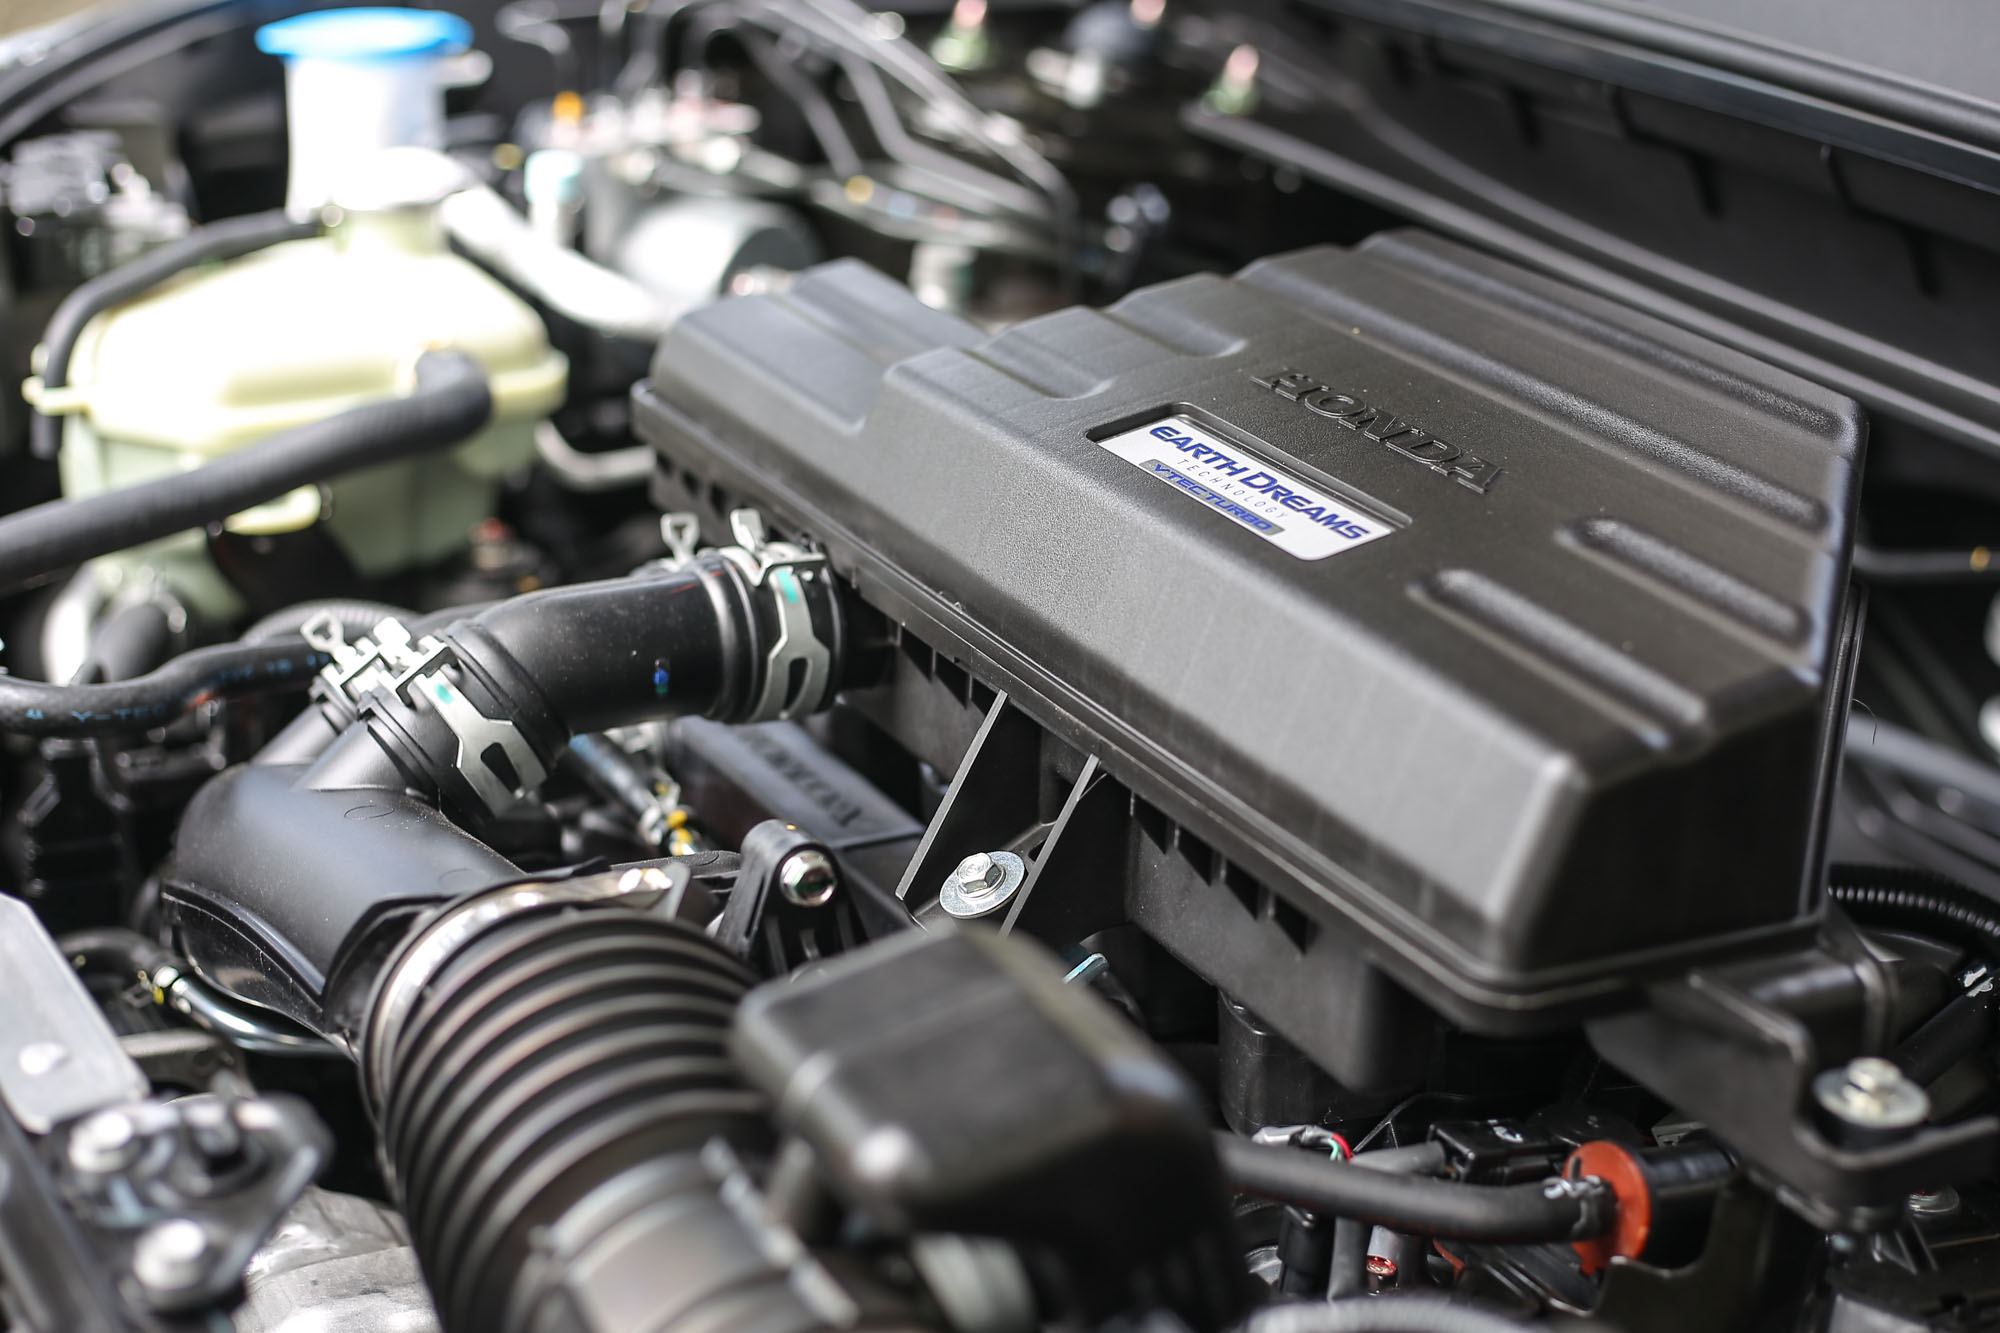 CR-V 搭載 1.5 升渦輪增壓直列四缸汽油引擎，具備 193ps/5600rpm 最大馬力與 24.8kgm/2000~5000rpm 最大扭力。